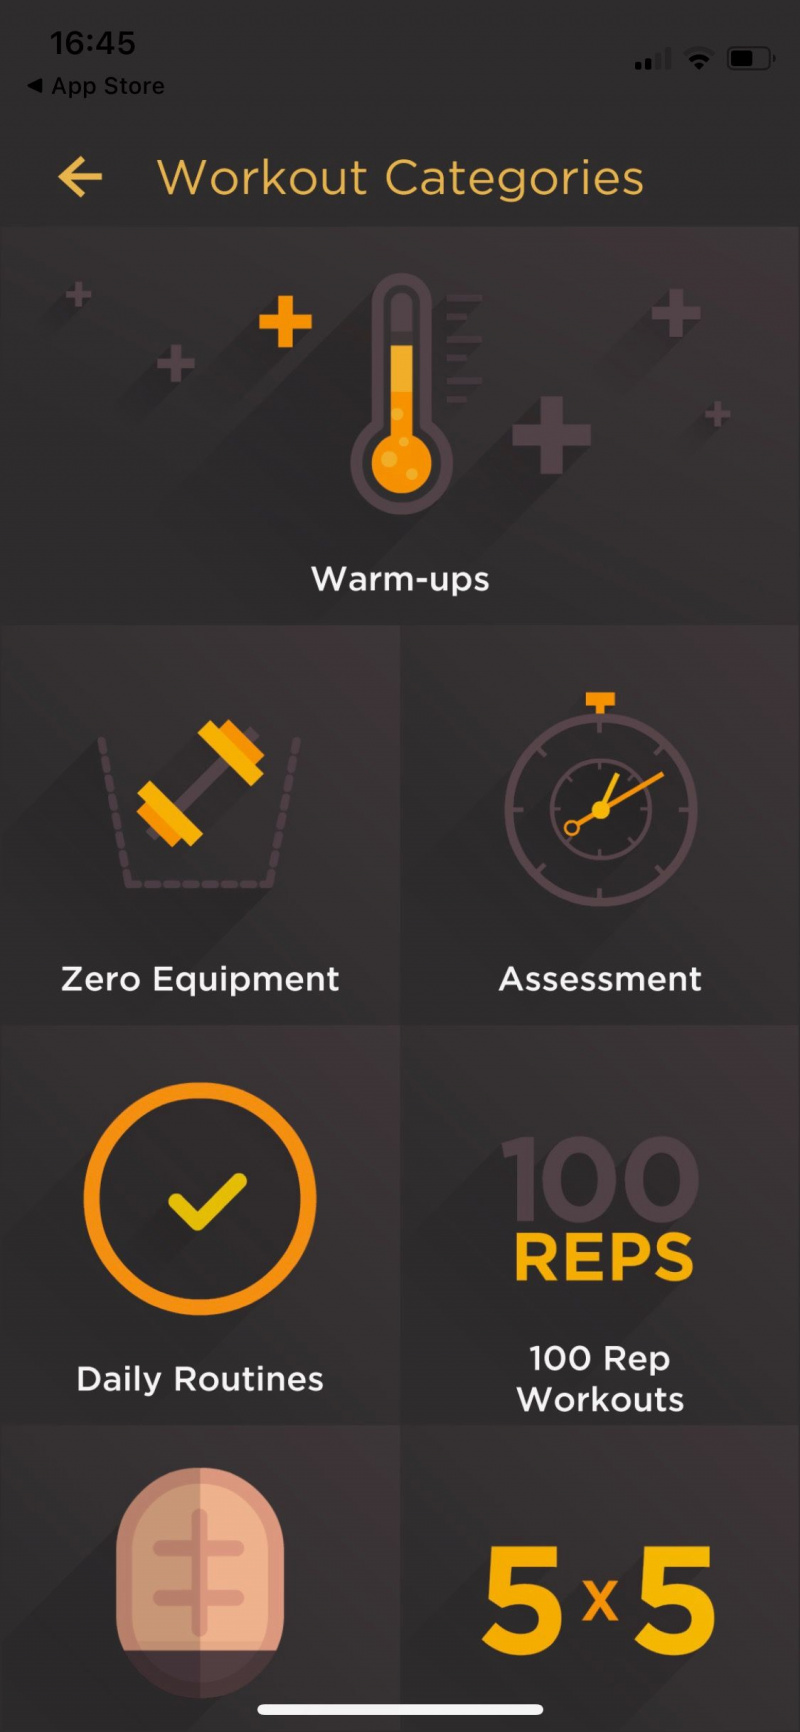   Captura de tela do aplicativo Al Kavado mostrando categorias de treino